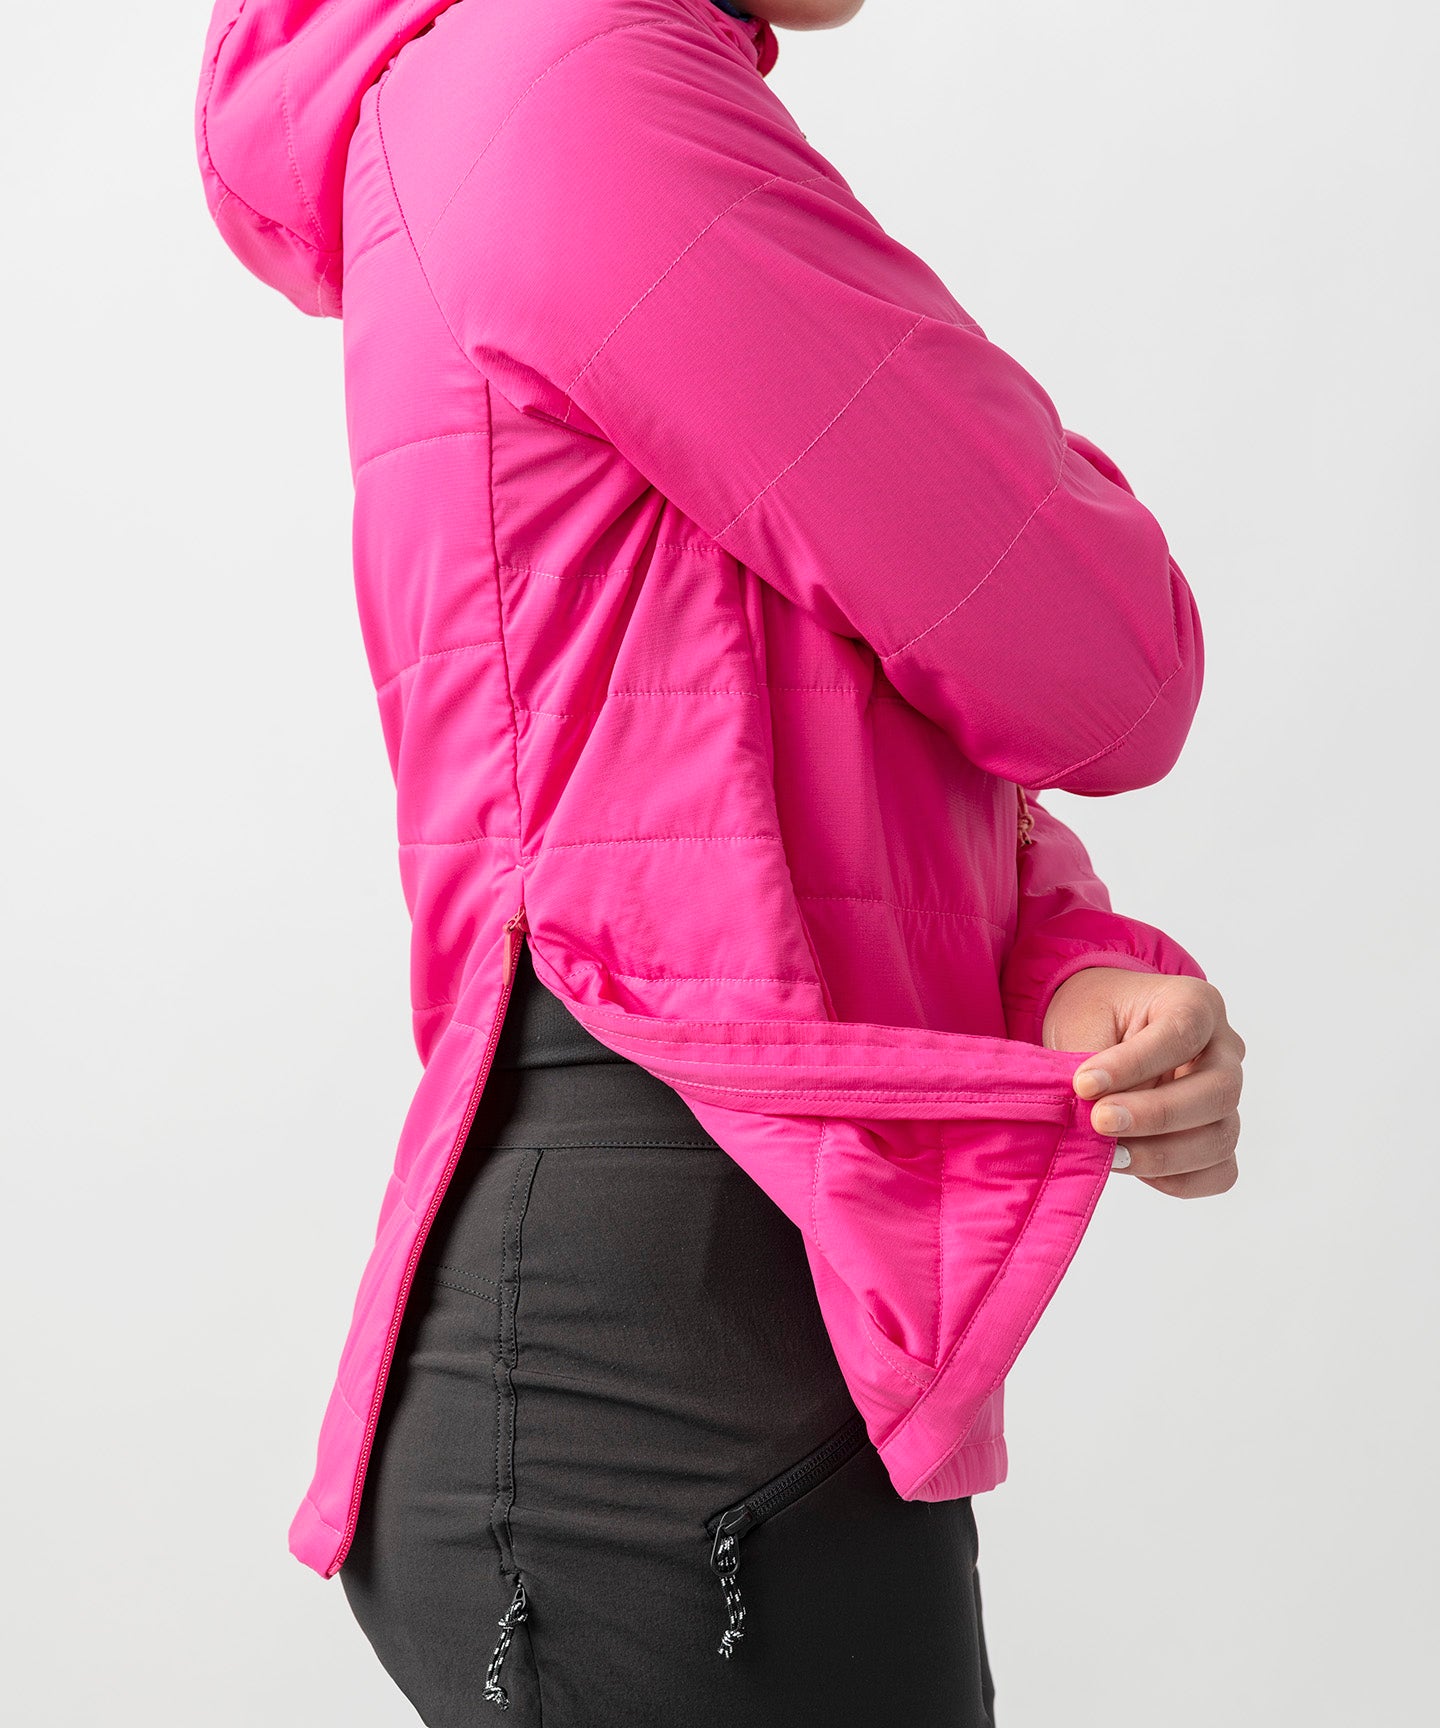 Fort Collins Lightweight Windbreaker Zip-Front Jacket For Women (Green, L)